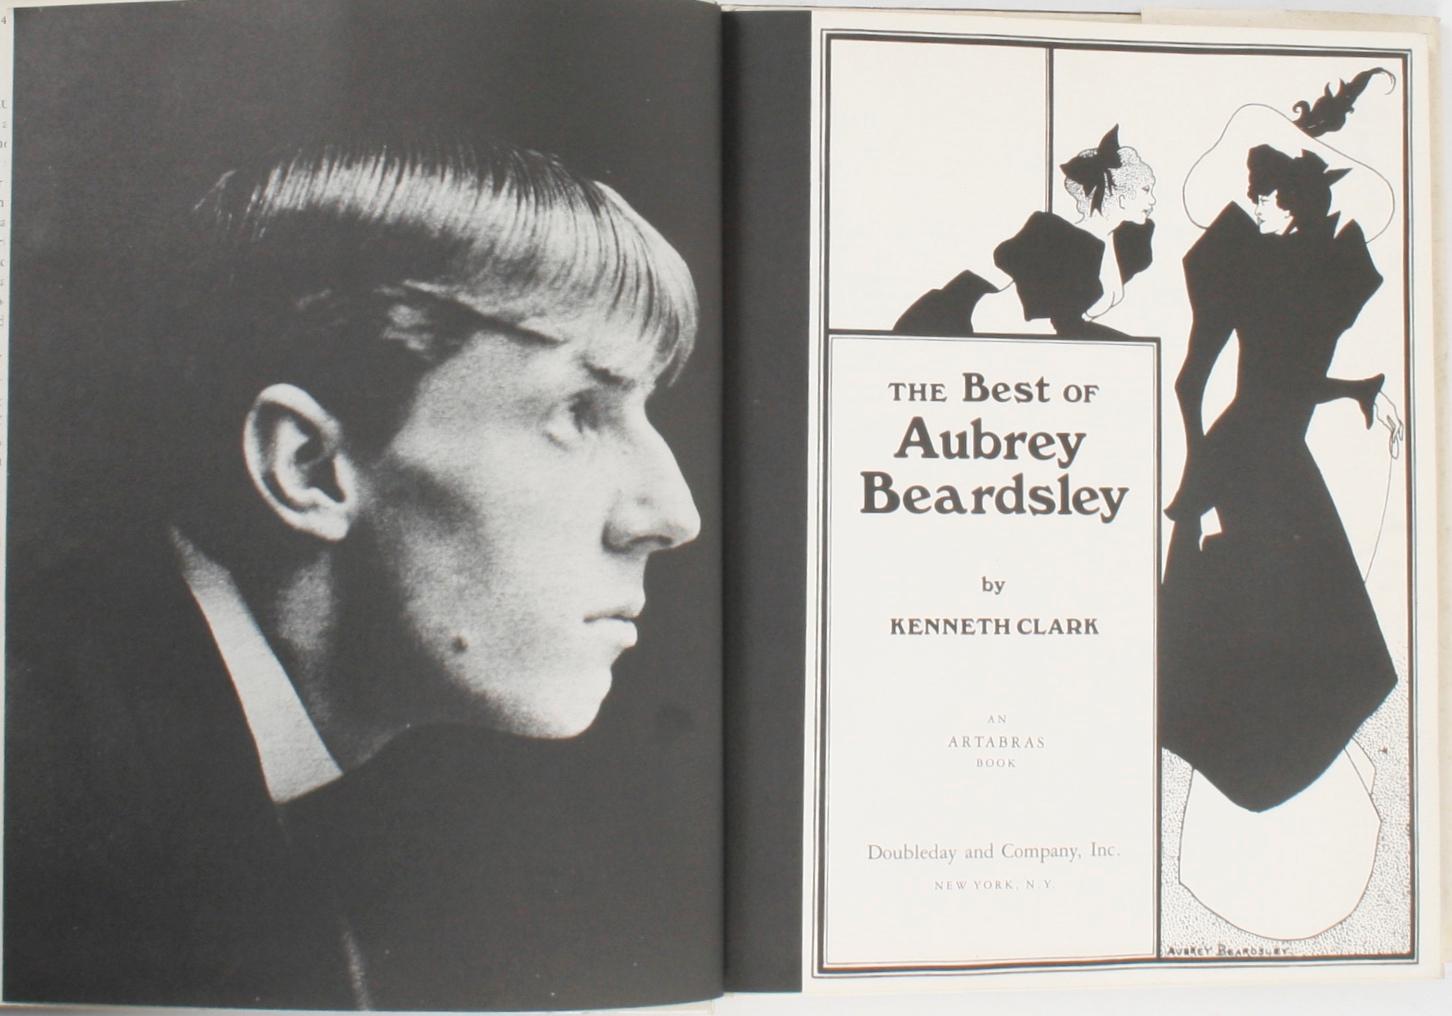 The Best of Aubrey Beardsley par Kenneth Clark. New York : Doubleday and Company, Inc., 1978. 1er éd. relié avec jaquette. 173 pages. Une présentation d'Aubrey Vincent Beardsley (1872-1898), illustrateur et auteur anglais, avec soixante de ses